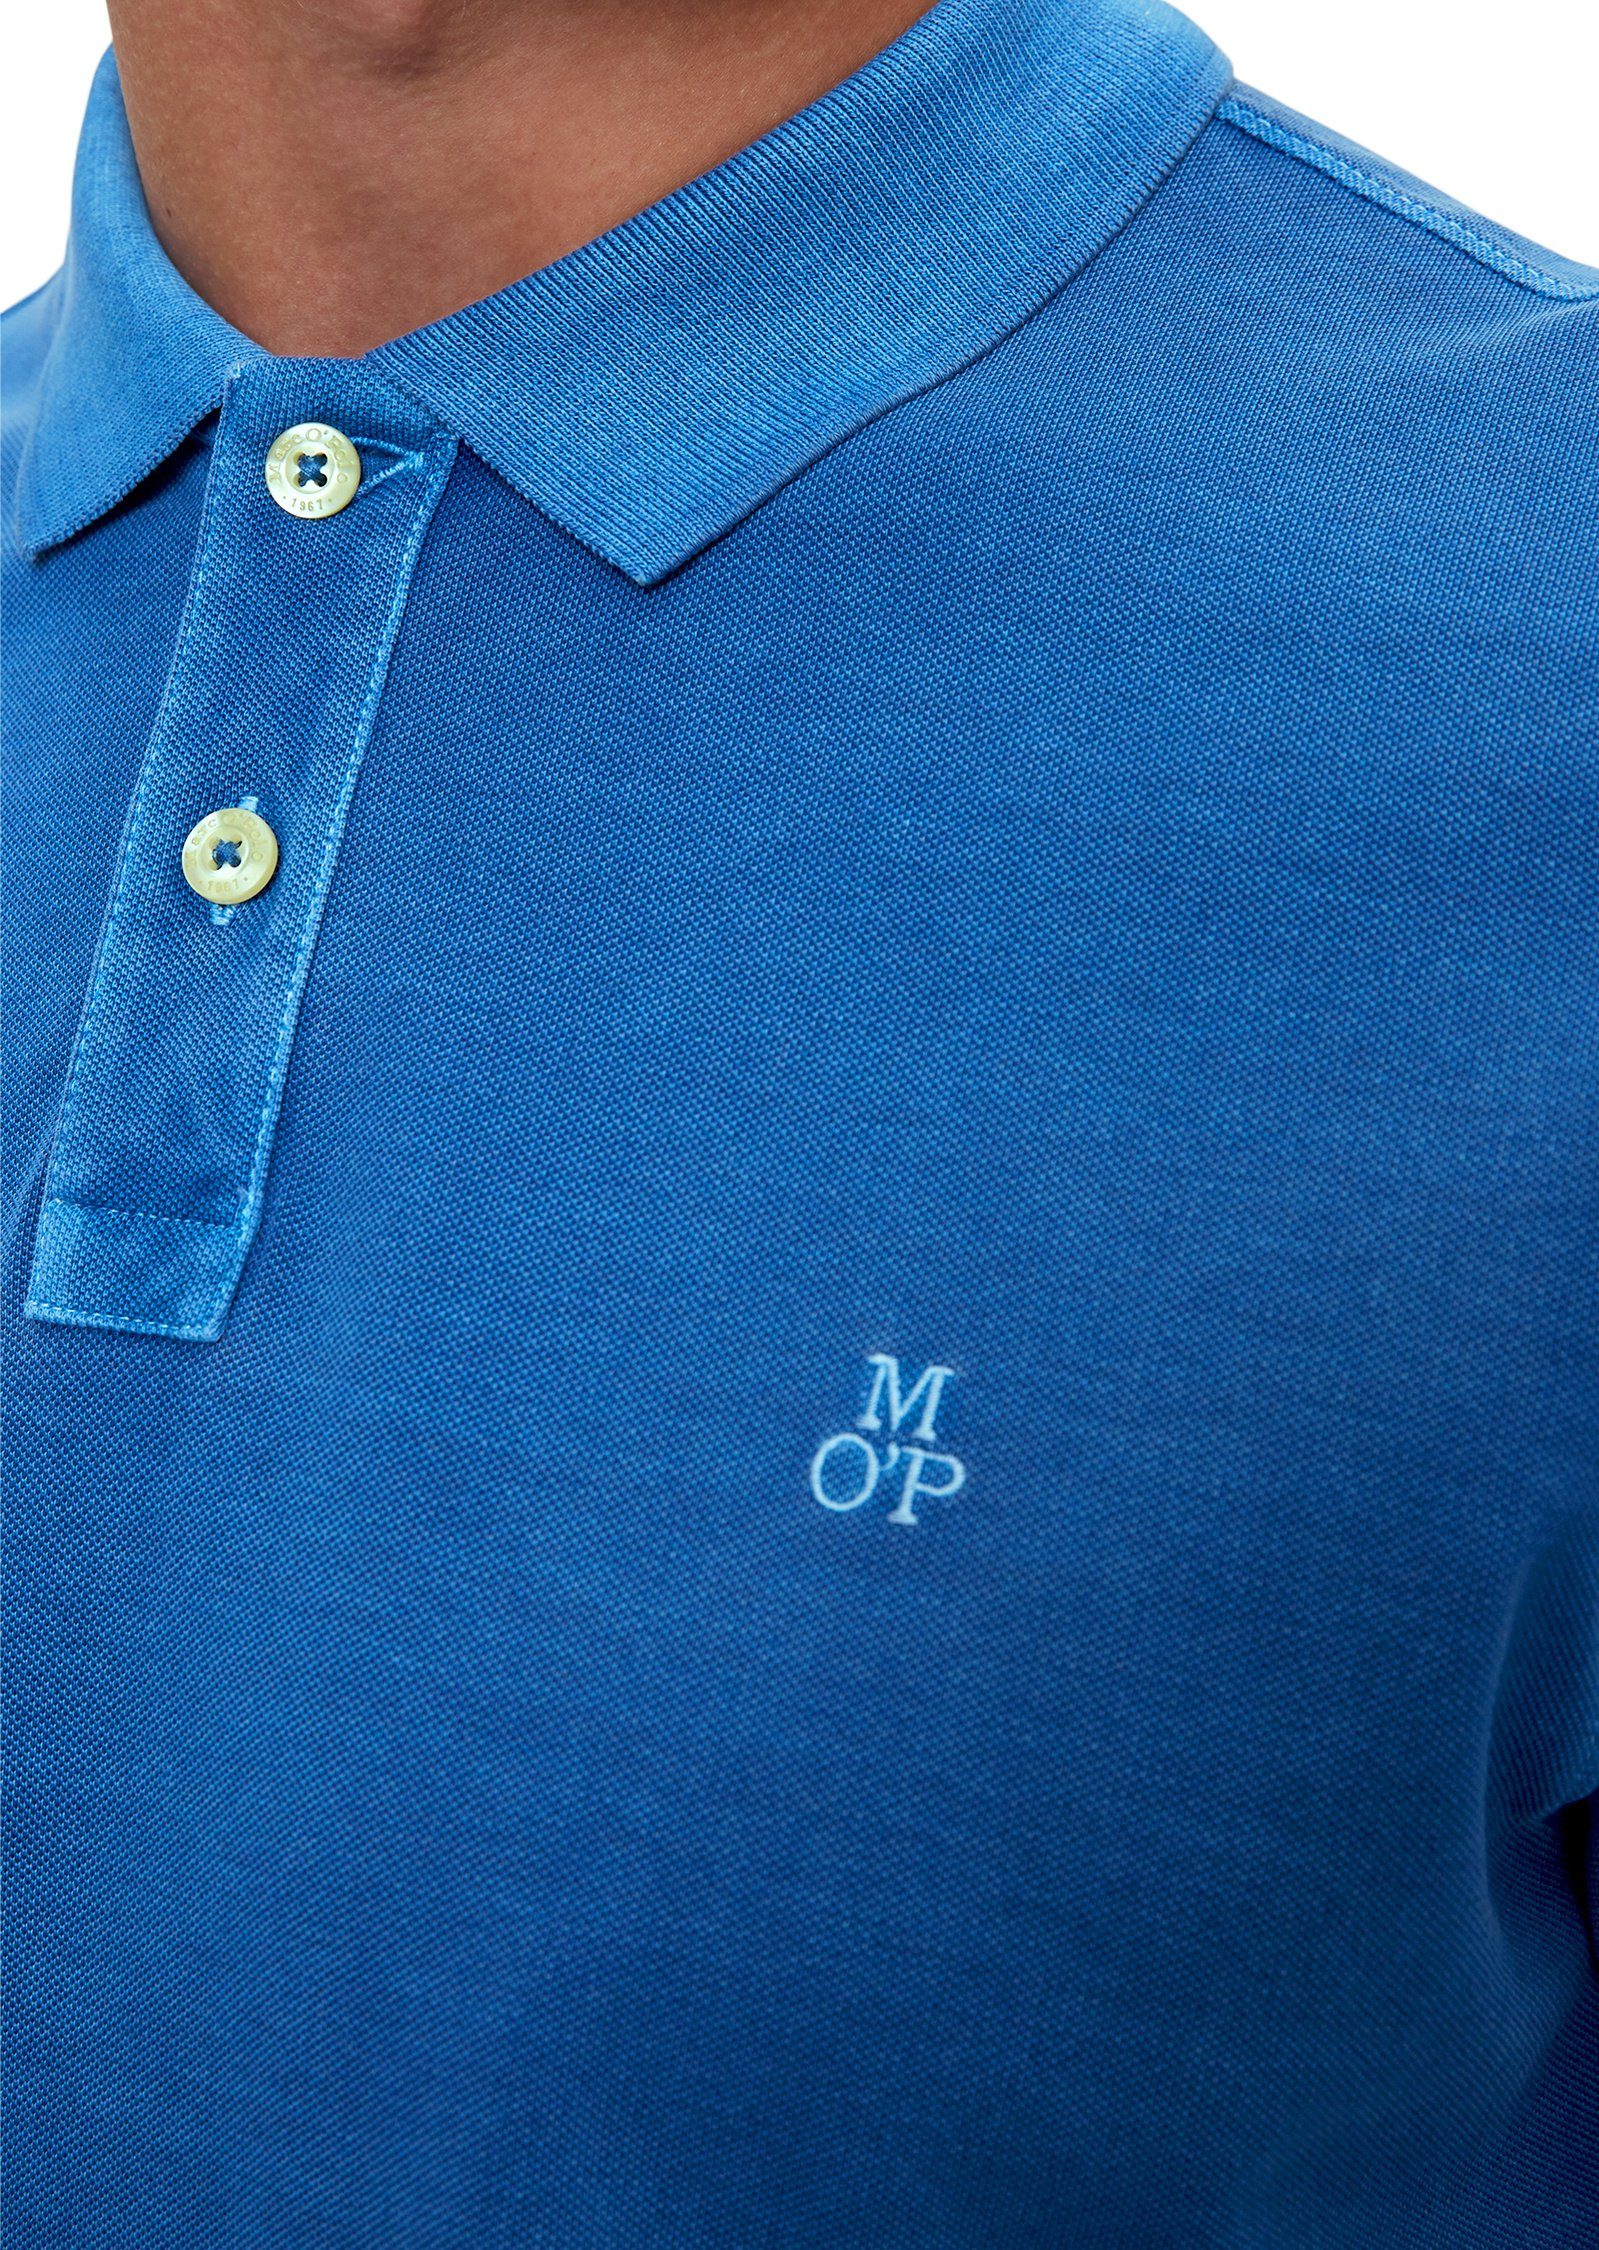 Marc O'Polo Bio-Baumwolle Poloshirt aus blau